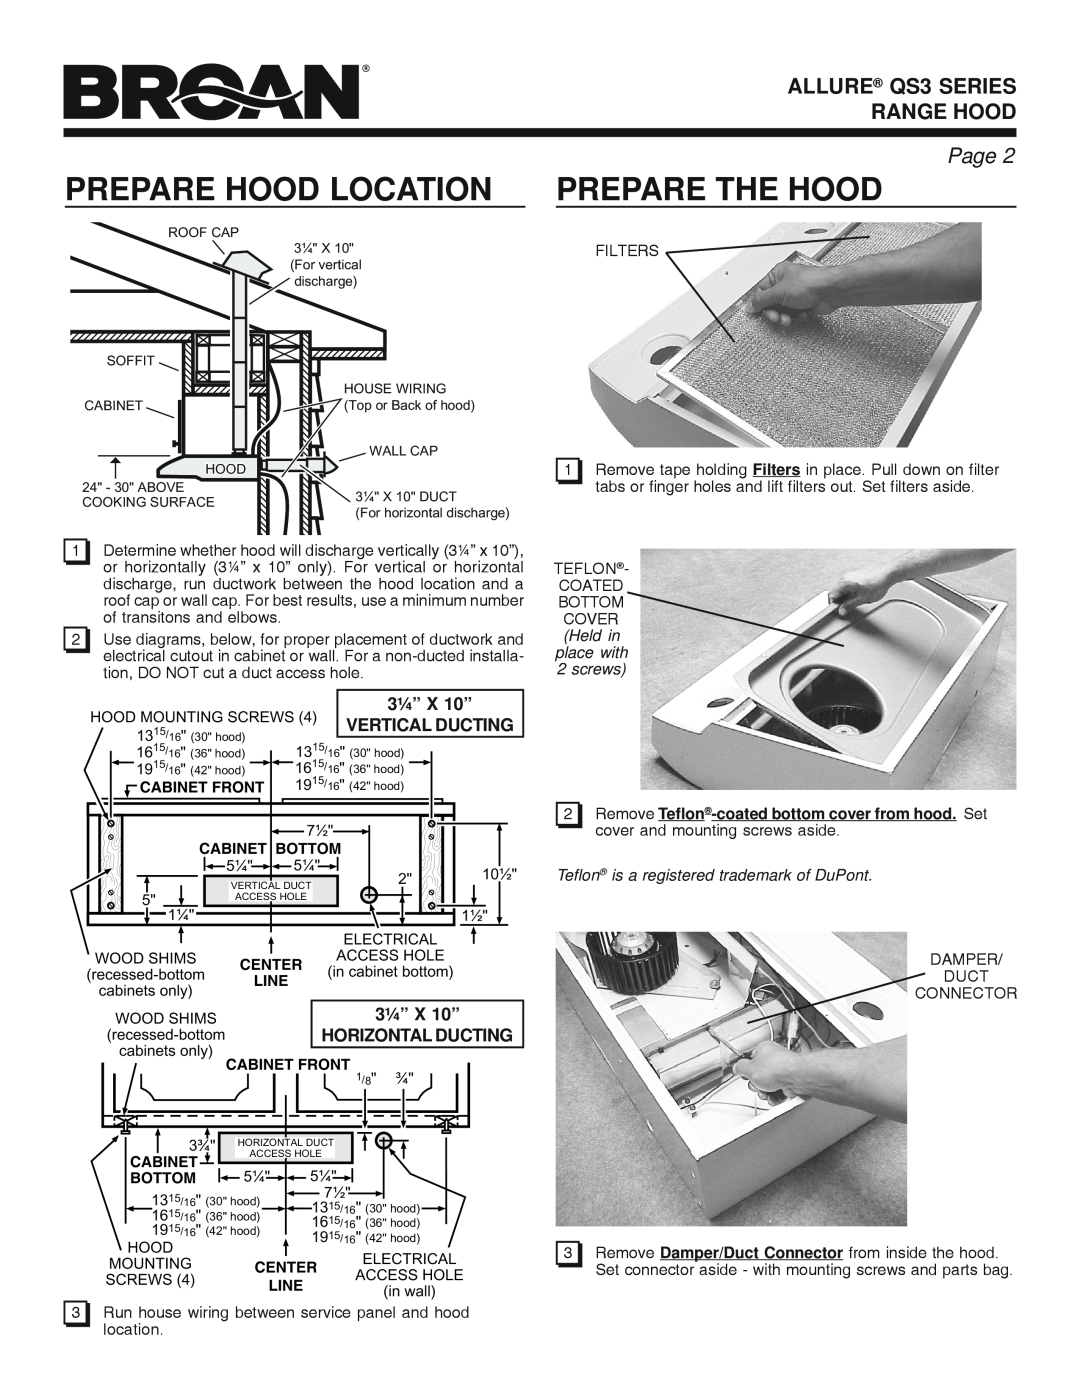 Broan manual Prepare Hood Location, Prepare The Hood, ALLURE QS3 SERIES RANGE HOOD, Page, 3¼” X 10”, Vertical Ducting 